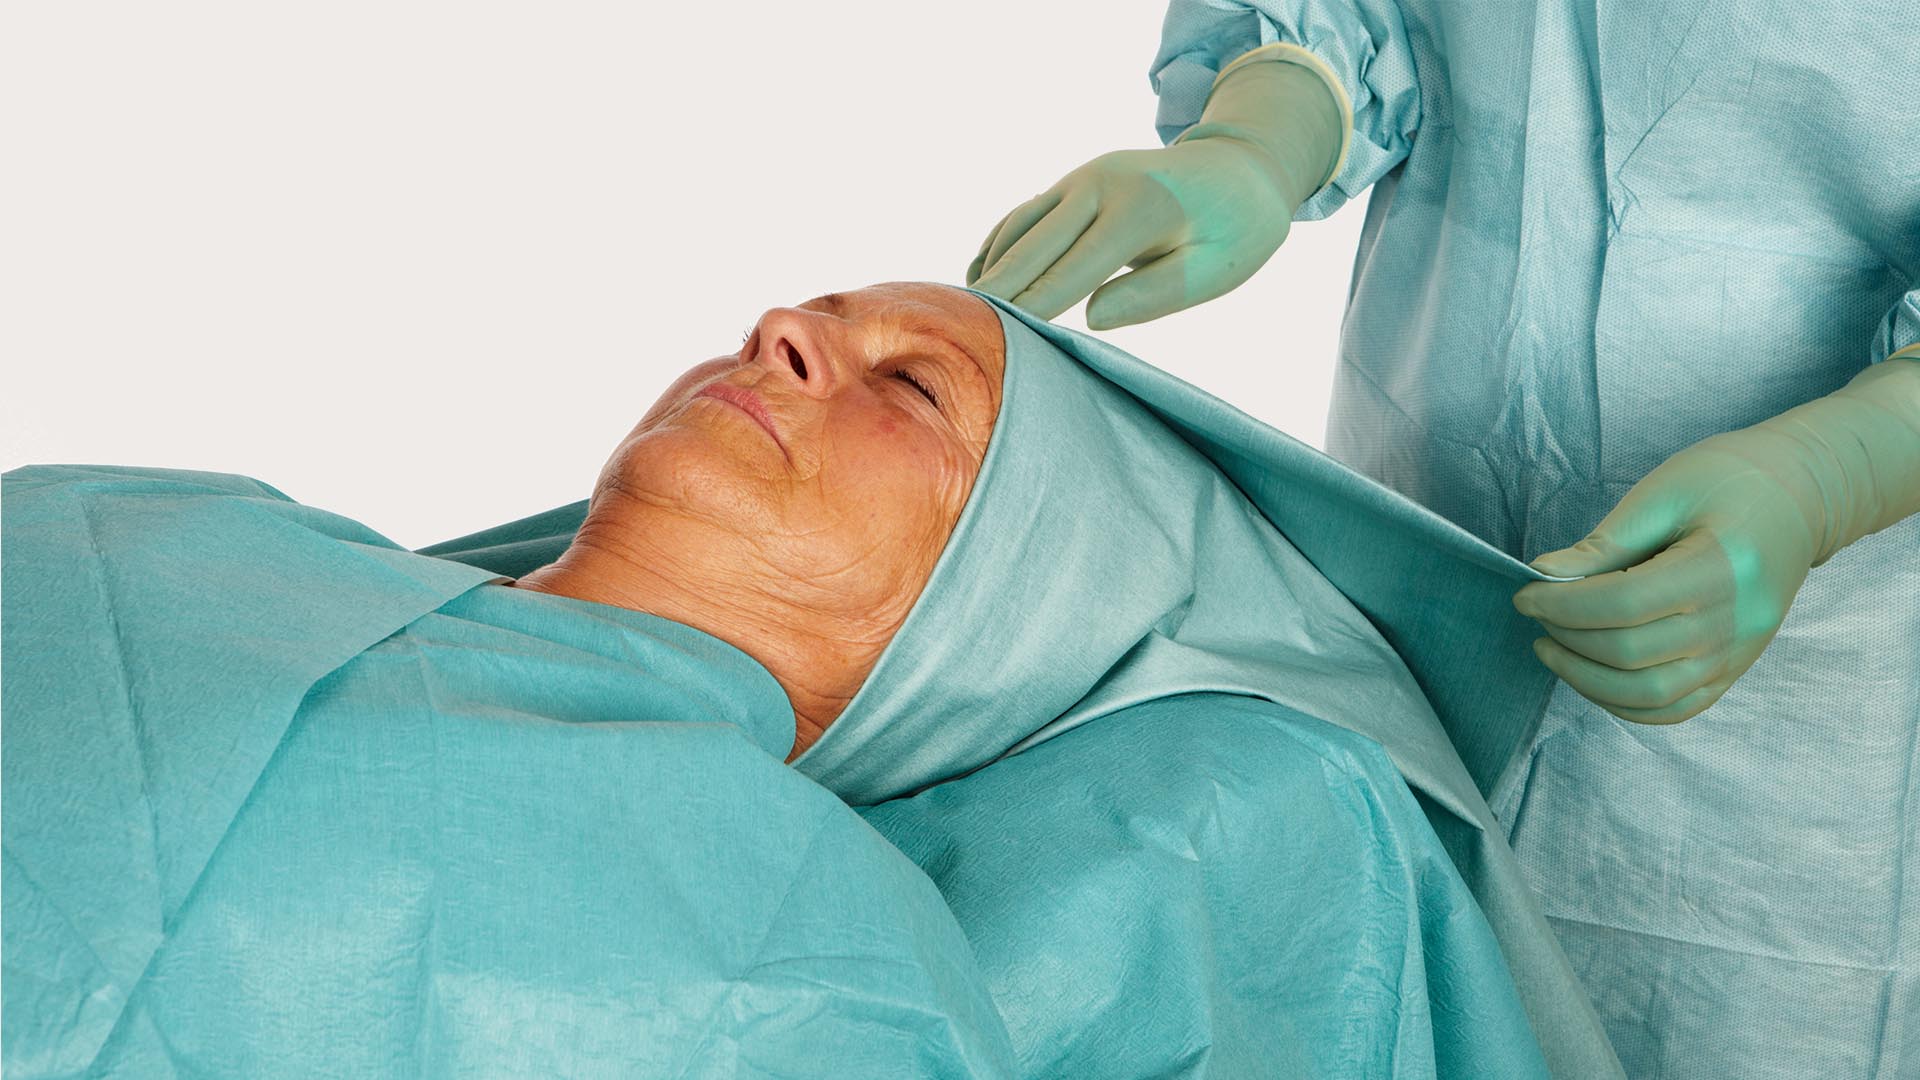 hoofd van een vrouwelijk patiënt, afgedekt met een barrier kno afdeklaken